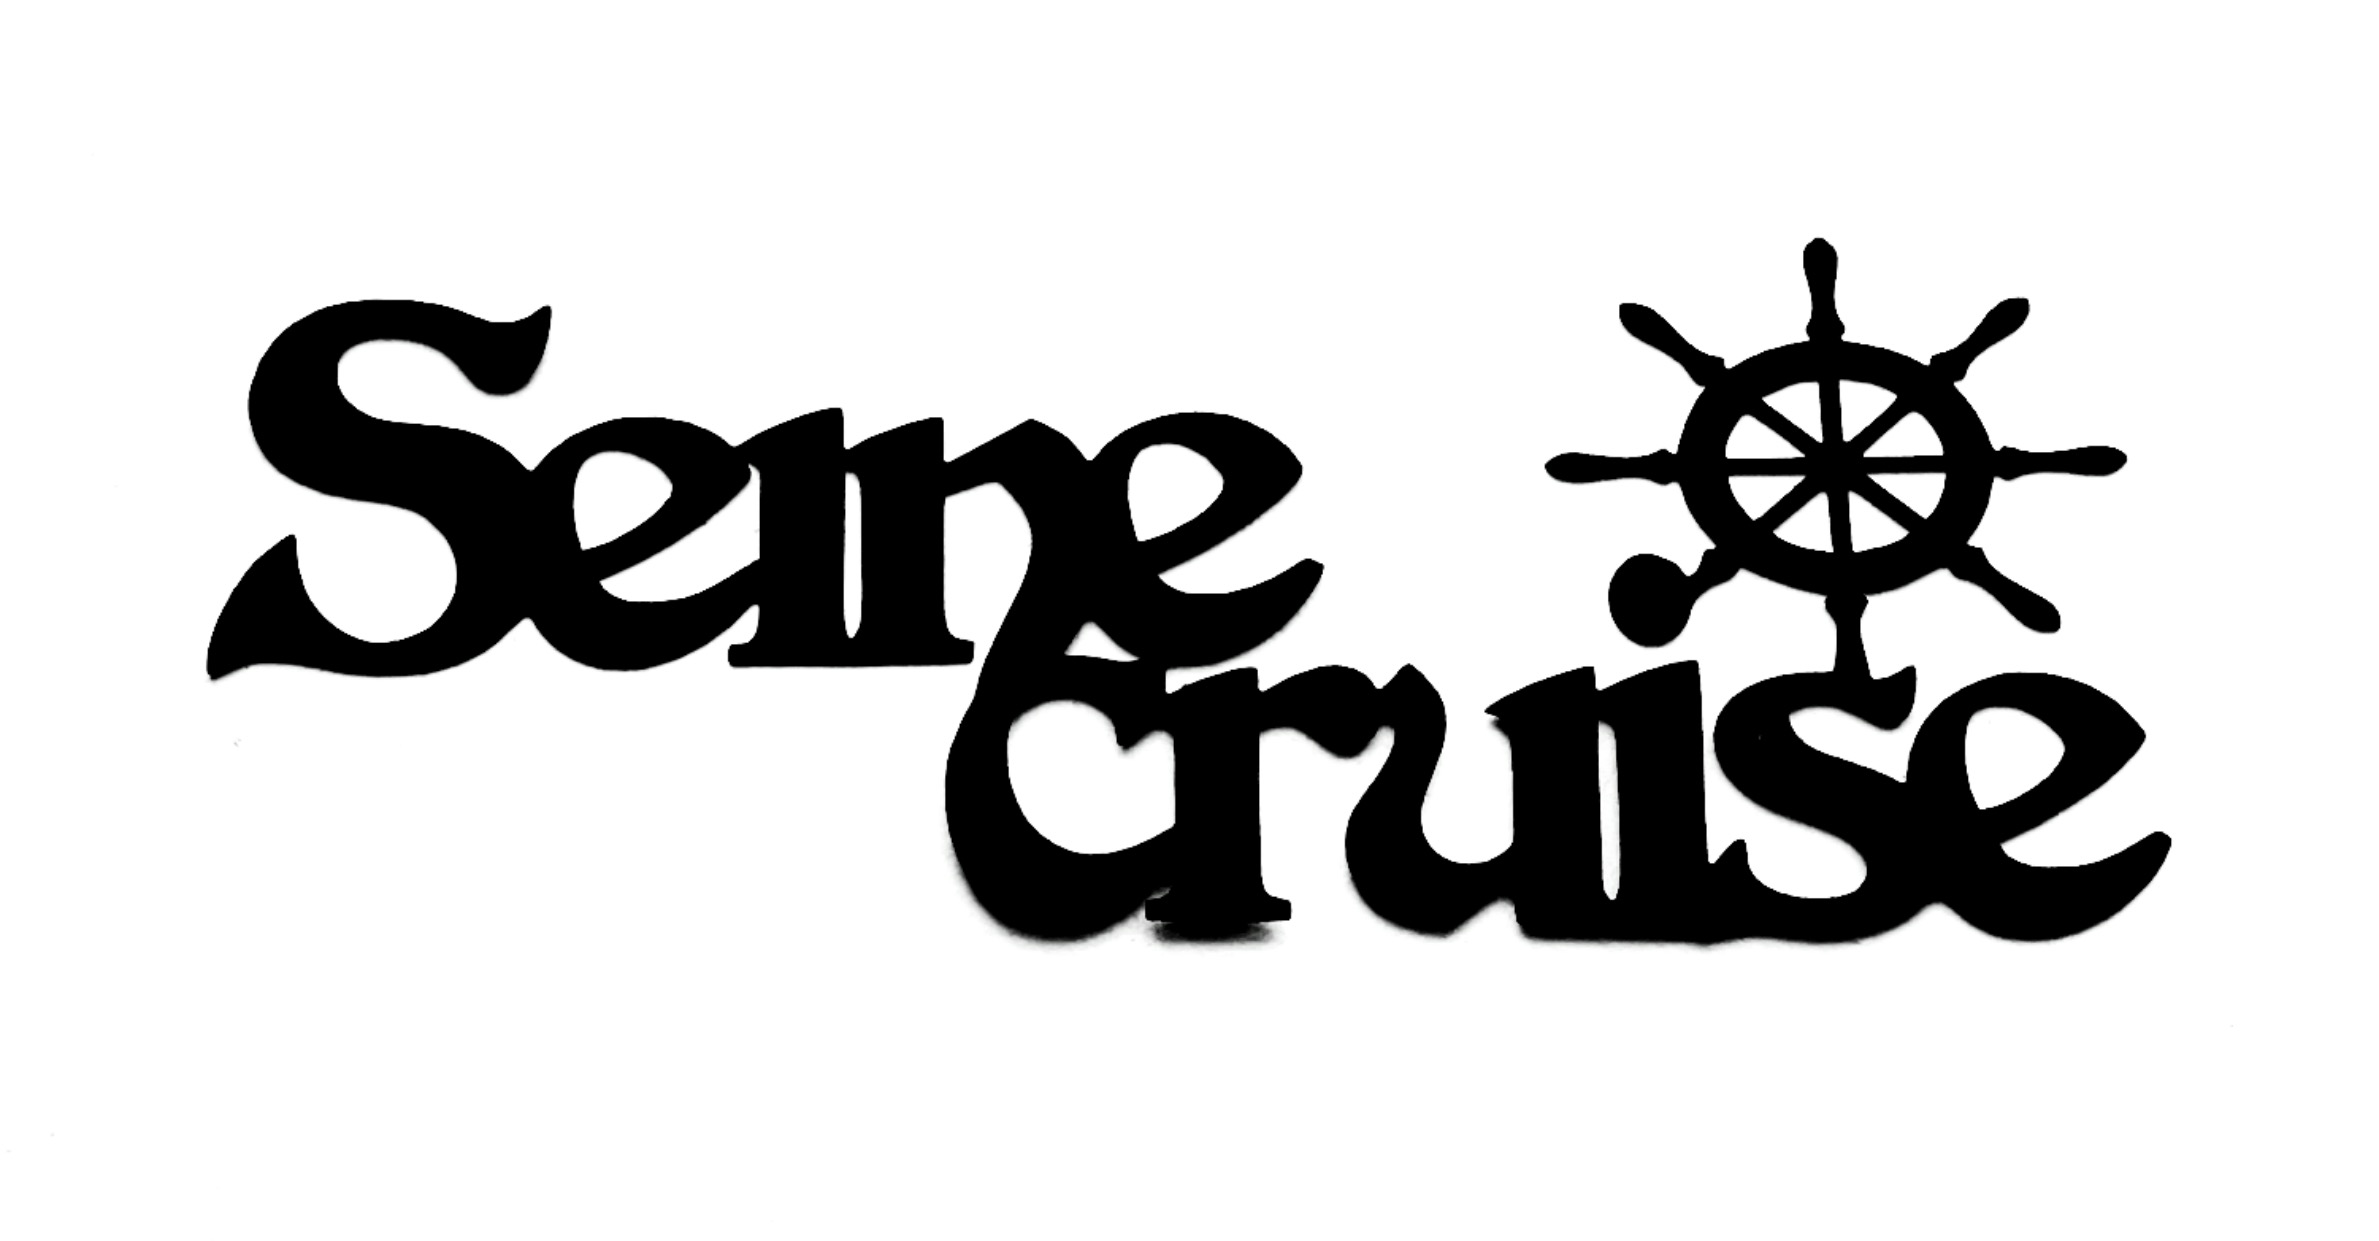 Seine Cruise Scrapbooking Laser Cut Title with wheel